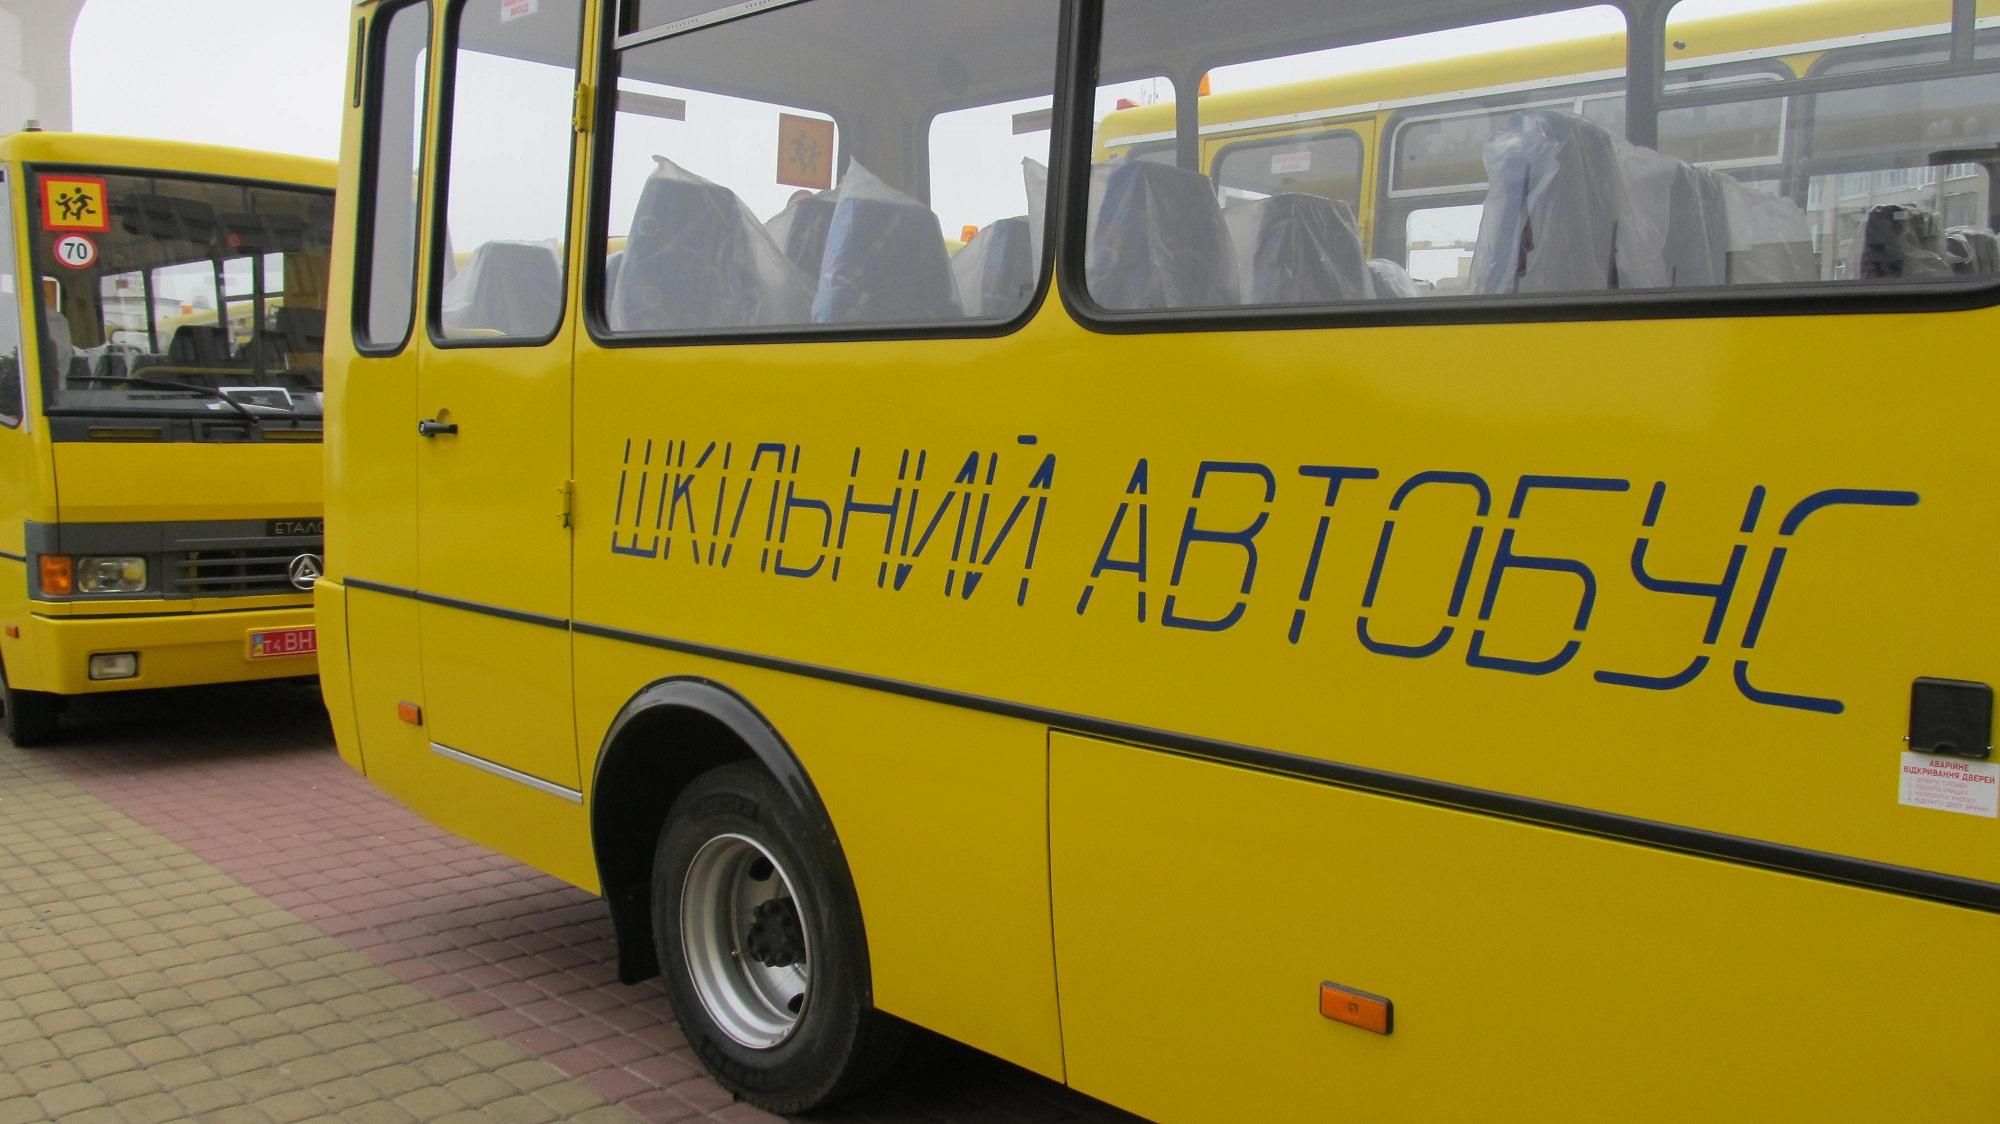 Рекорд коррупции по закупке школьных автобусов зафиксирован во Львовской области, – СМИ